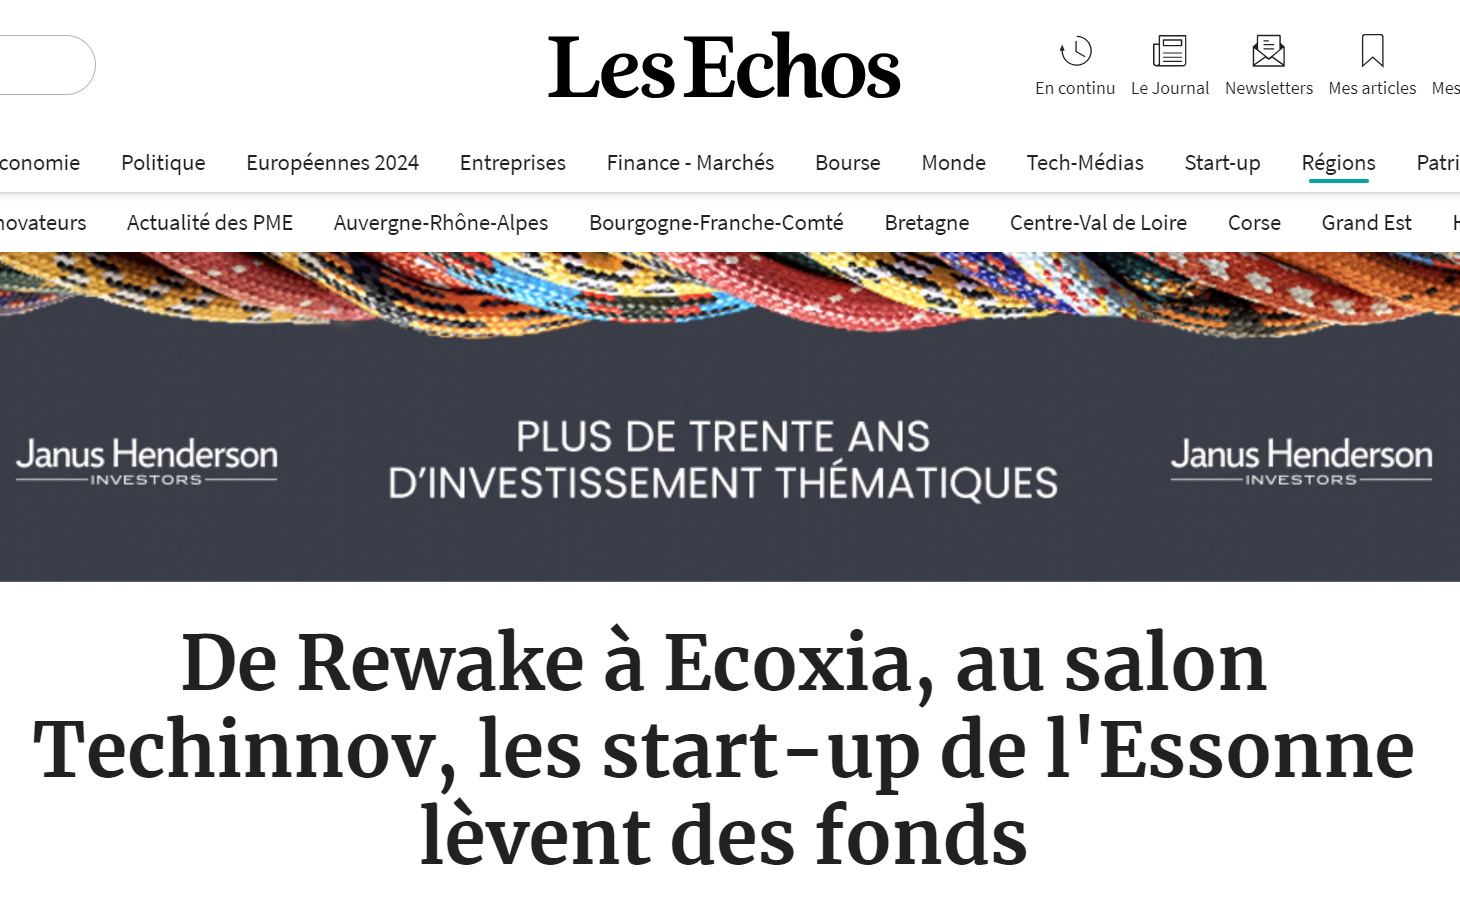 Capture d'écran du site Les Echos : article sur ecoXia